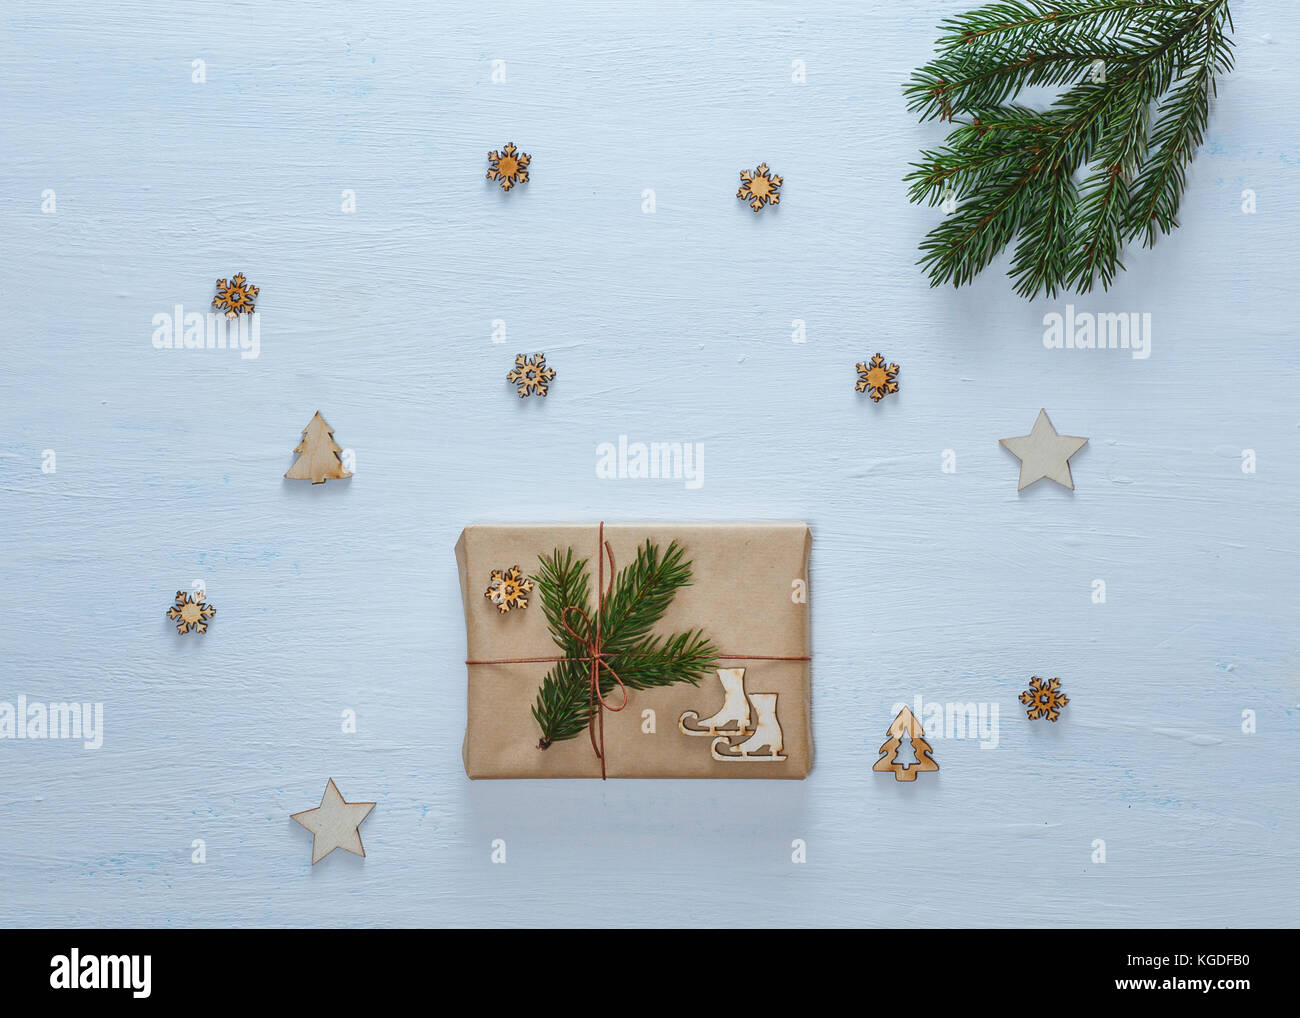 Weihnachten Komposition. Weihnachten Geschenke, Tannenzweigen und dekorative Sterne, Schneeflocken, Tannen auf Blau Schreibtisch. Flach, Ansicht von oben Stockfoto